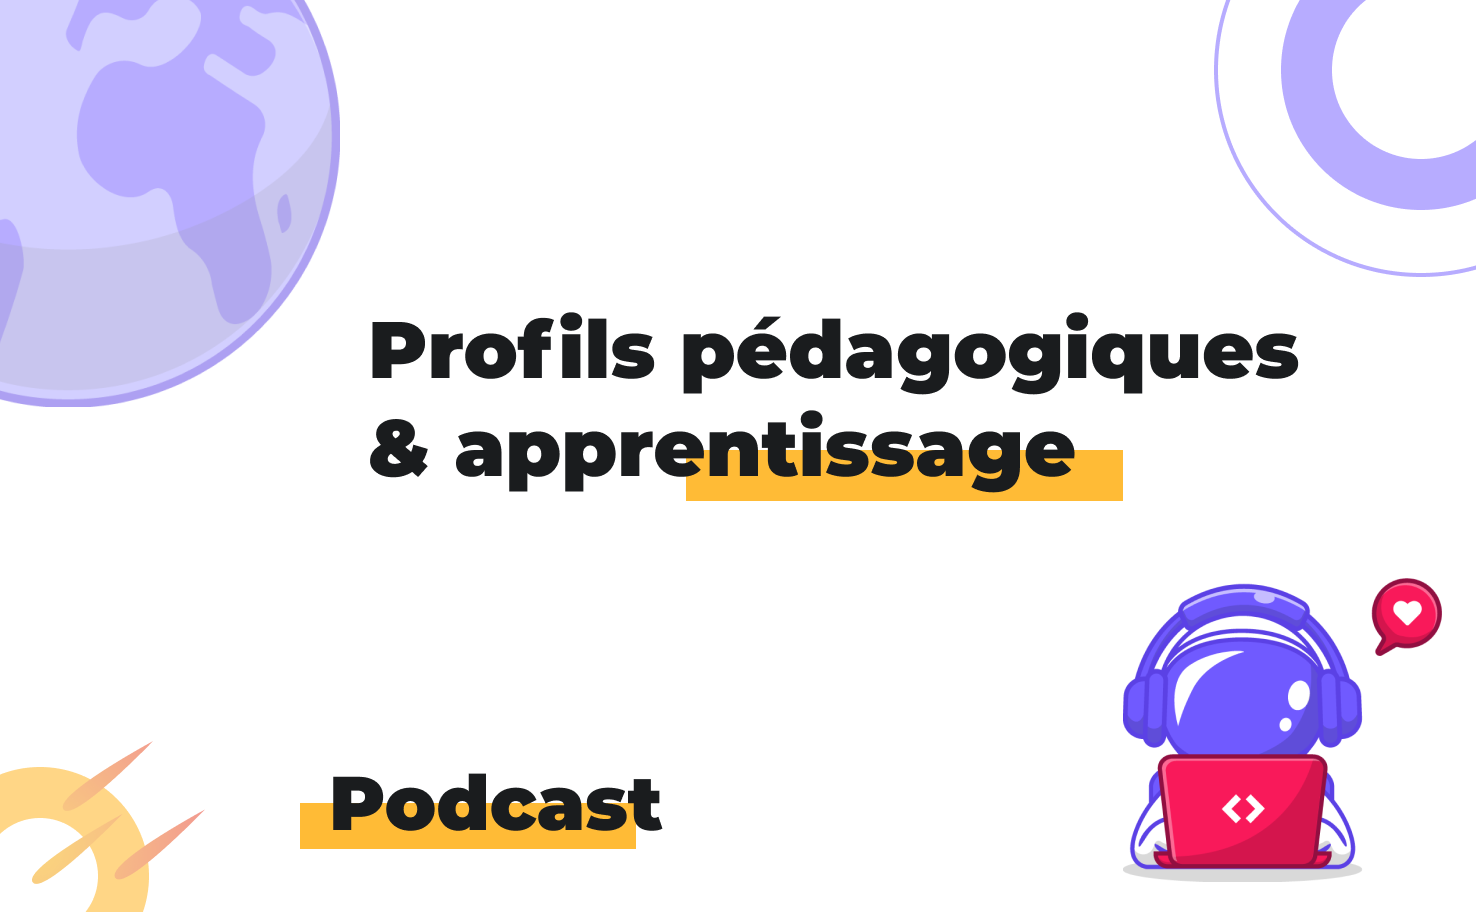 L'image affiche le sujet du podcast: Profils pédagogiques et apprentissage